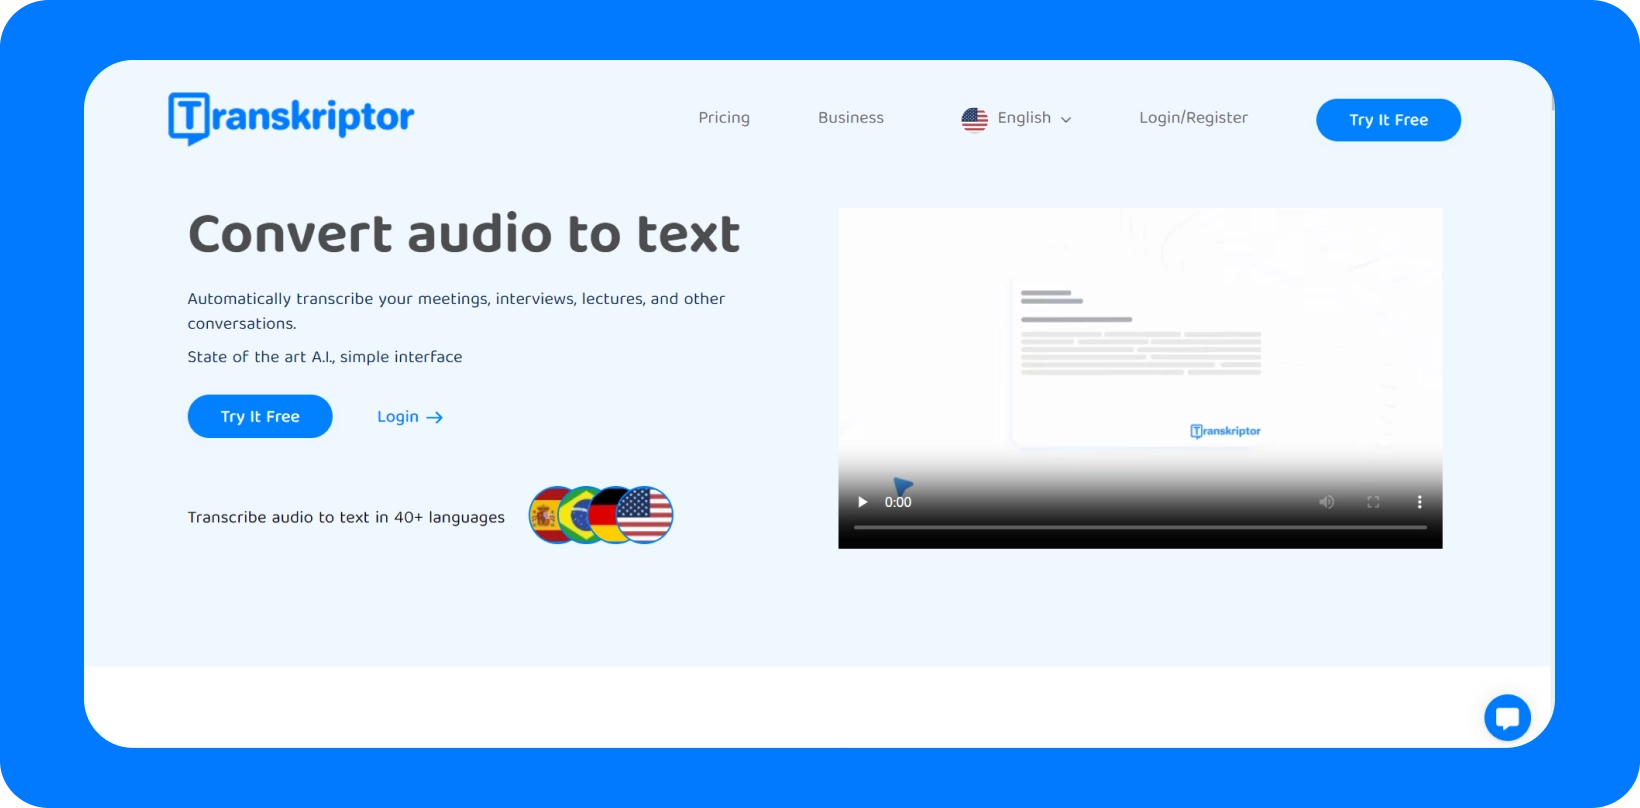 واجهة Transkriptor تعرض خدمة "تحويل الصوت إلى نص" مع دعم متعدد اللغات.